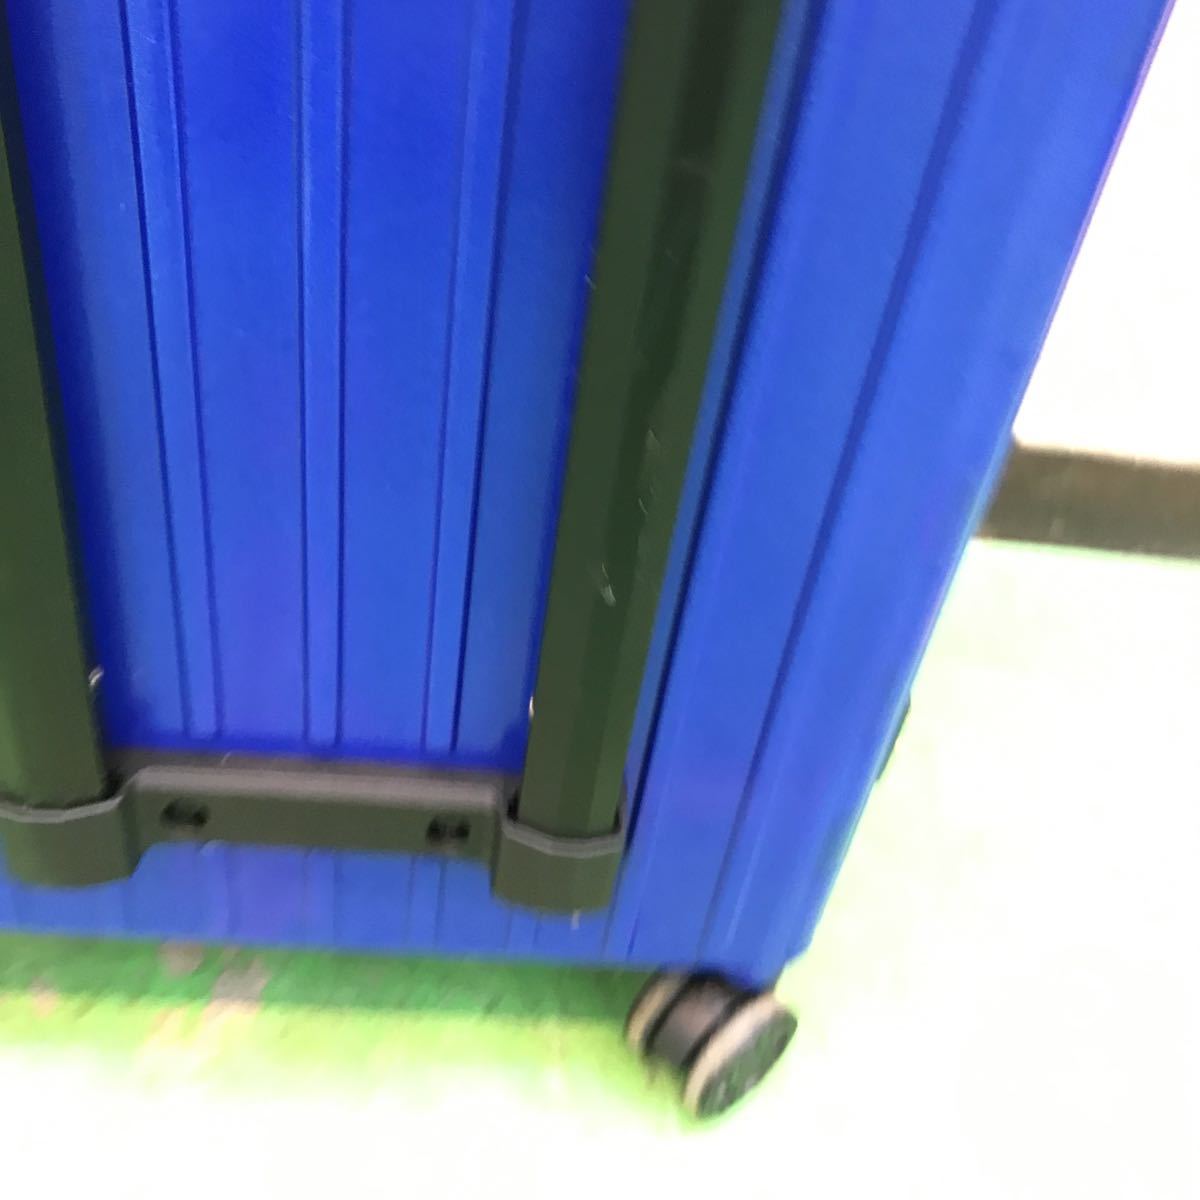  голубой складной Carry кейс дорожная сумка машина внутри принесенный возможно текущее состояние товар 